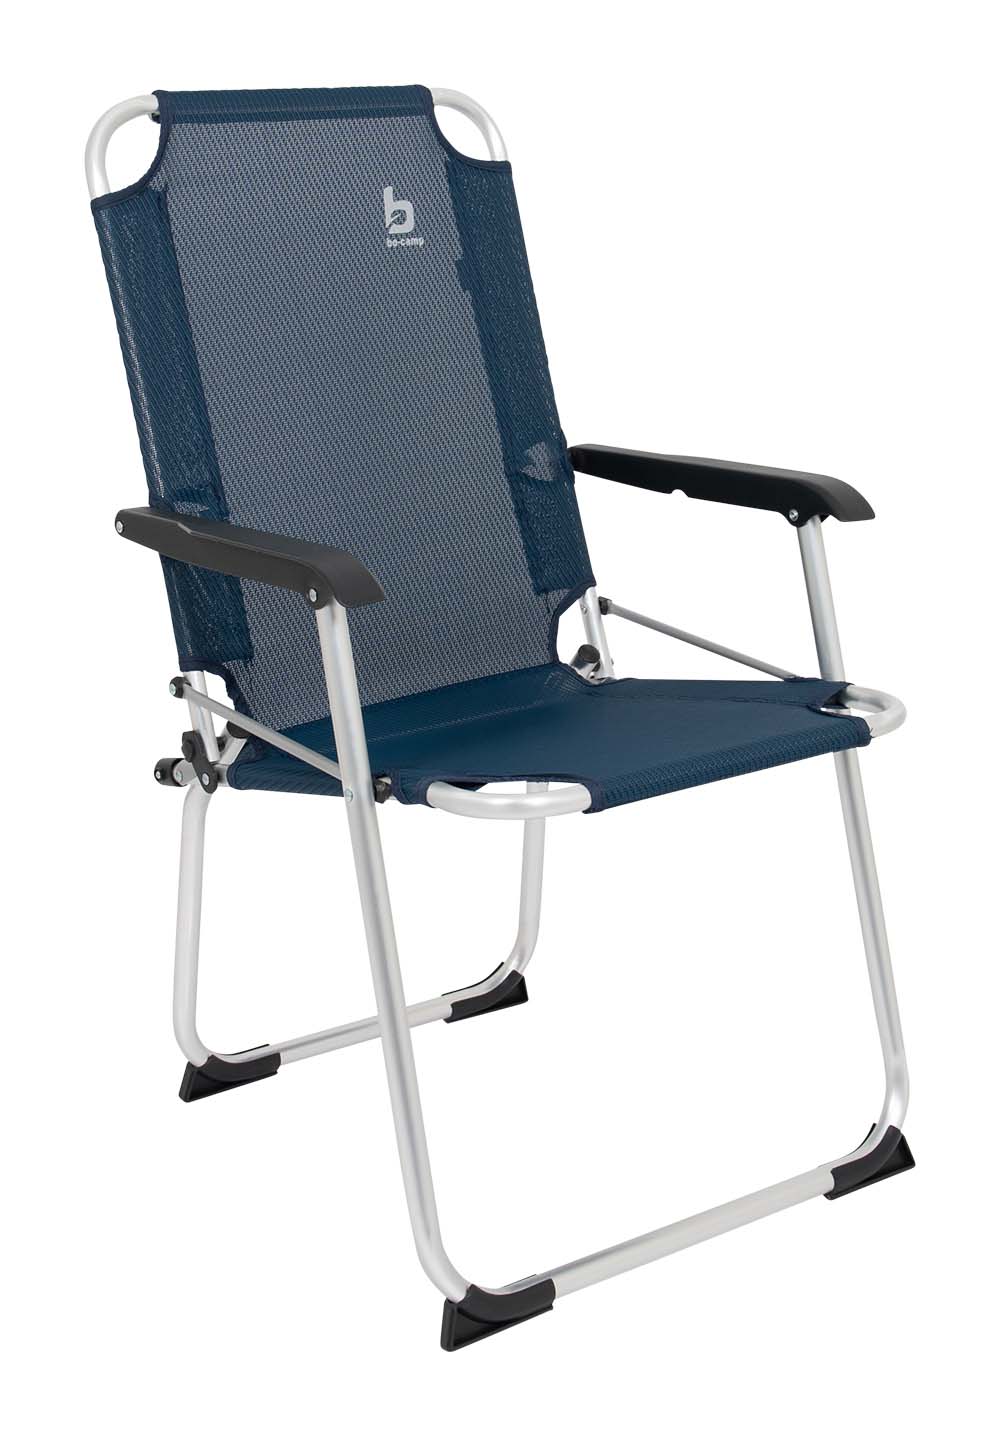 1211956 "Een zeer compacte luxe klapstoel. Een stoel waarbij stijl, comfort en functionaliteit worden gecombineerd. Voorzien van een luxe en sterke textilene stof en een lichtgewicht aluminium frame. Daarnaast is deze stoel voorzien van extra stabilisatoren en een 'safety-lock' tegen ongewenst inklappen. Compact mee te nemen."